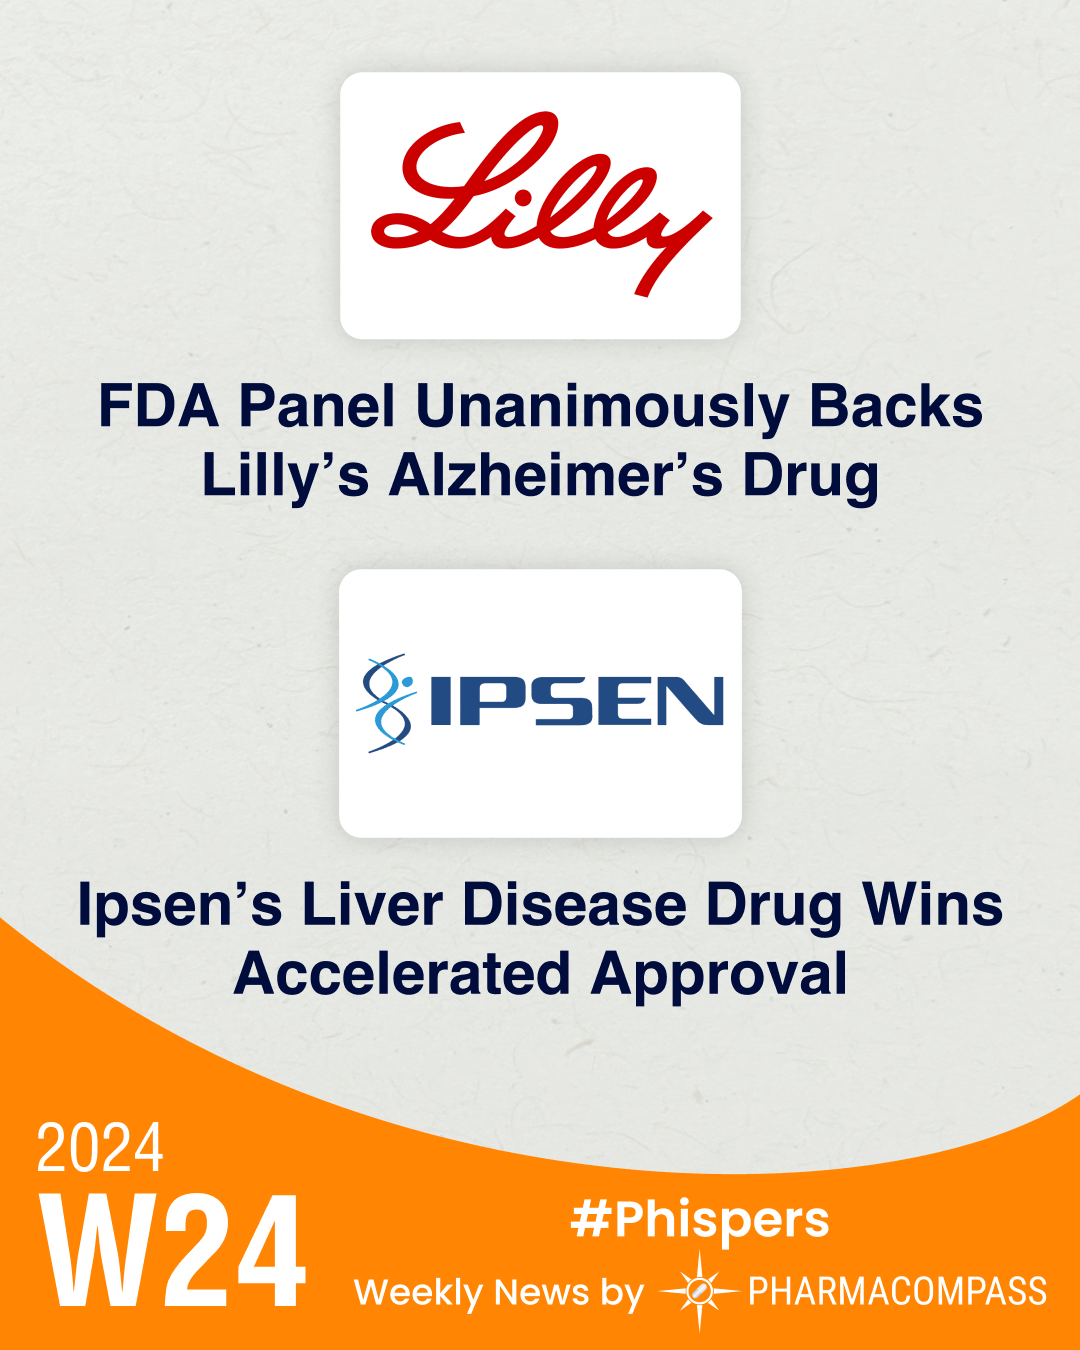 FDA panel backs Lilly’s Alzheimer’s drug; agency approves Ipsen’s med to treat rare liver disease